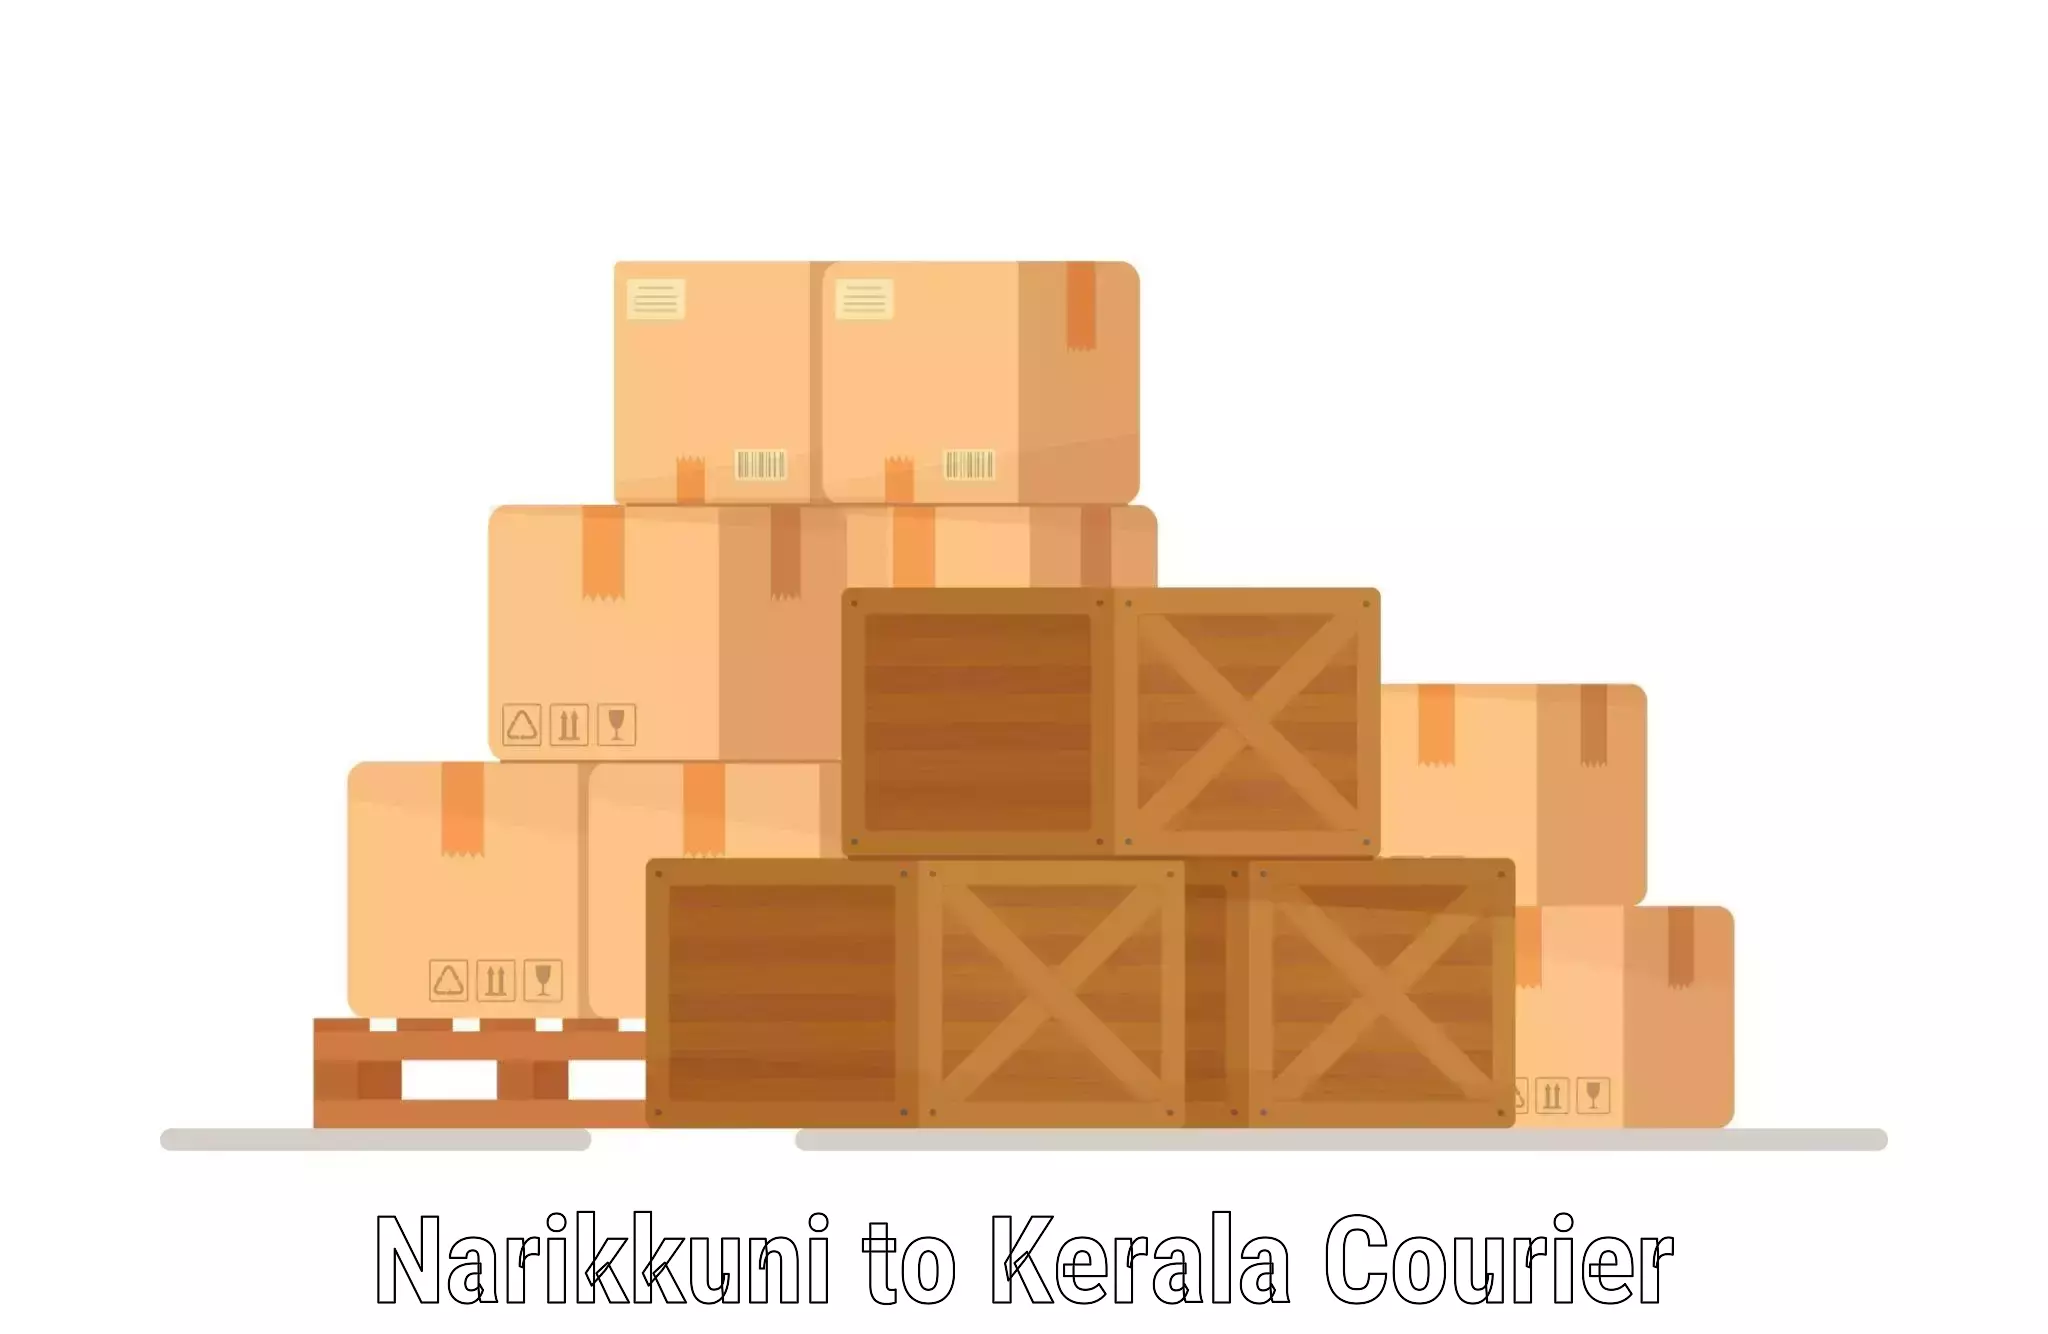 Logistics management Narikkuni to Kothamangalam